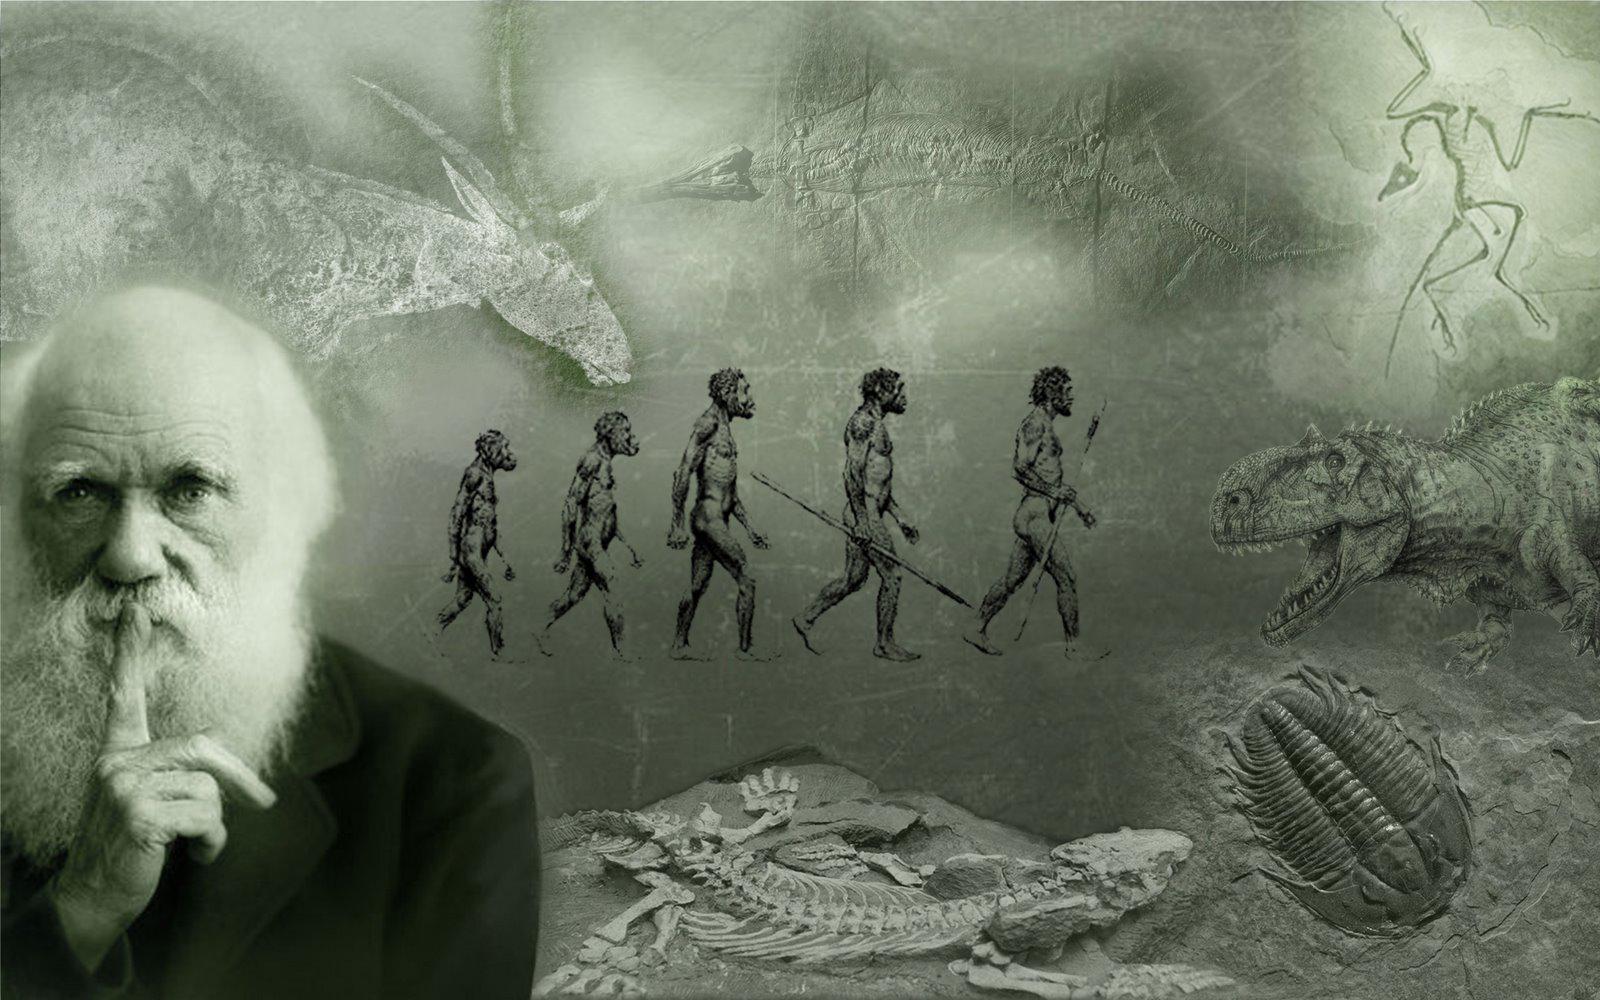 Εξέλιξη των Ειδών: Η διαλεκτική σύνδεση του ανθρώπου με την ιστορία